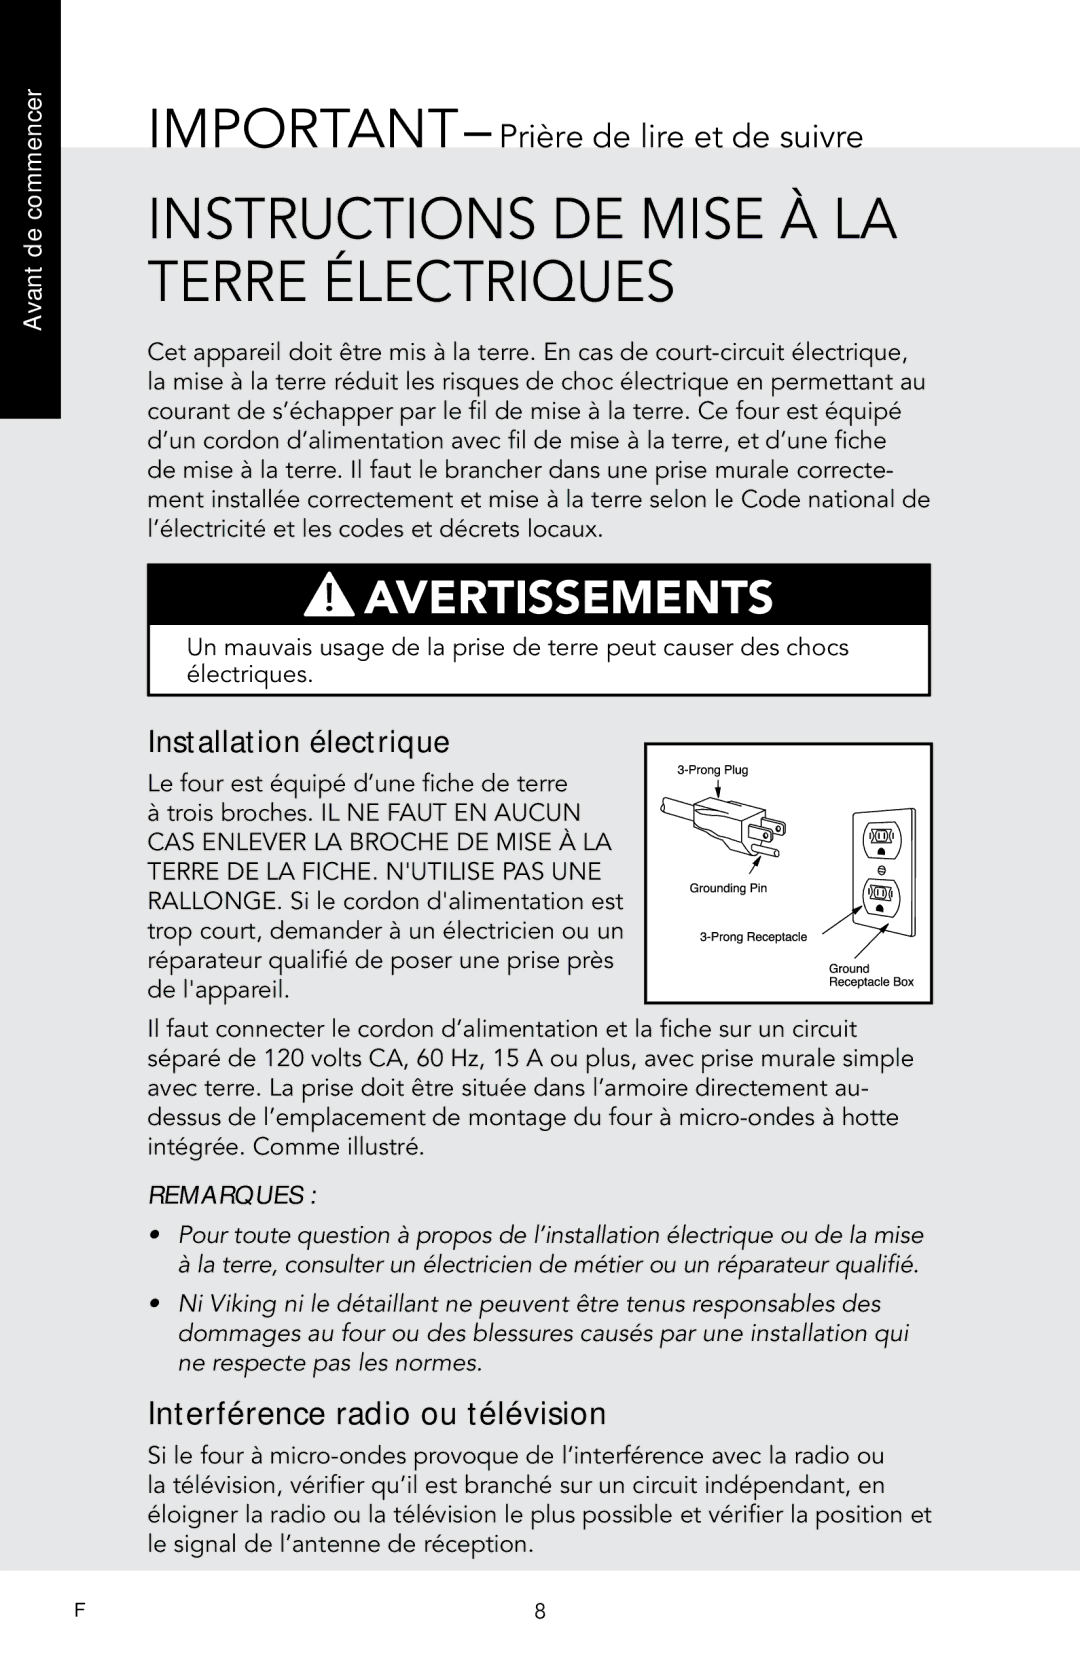 Viking F20974 manual Instructions de mise à la terre électriques, IMPORTANT- Prière de lire et de suivre 